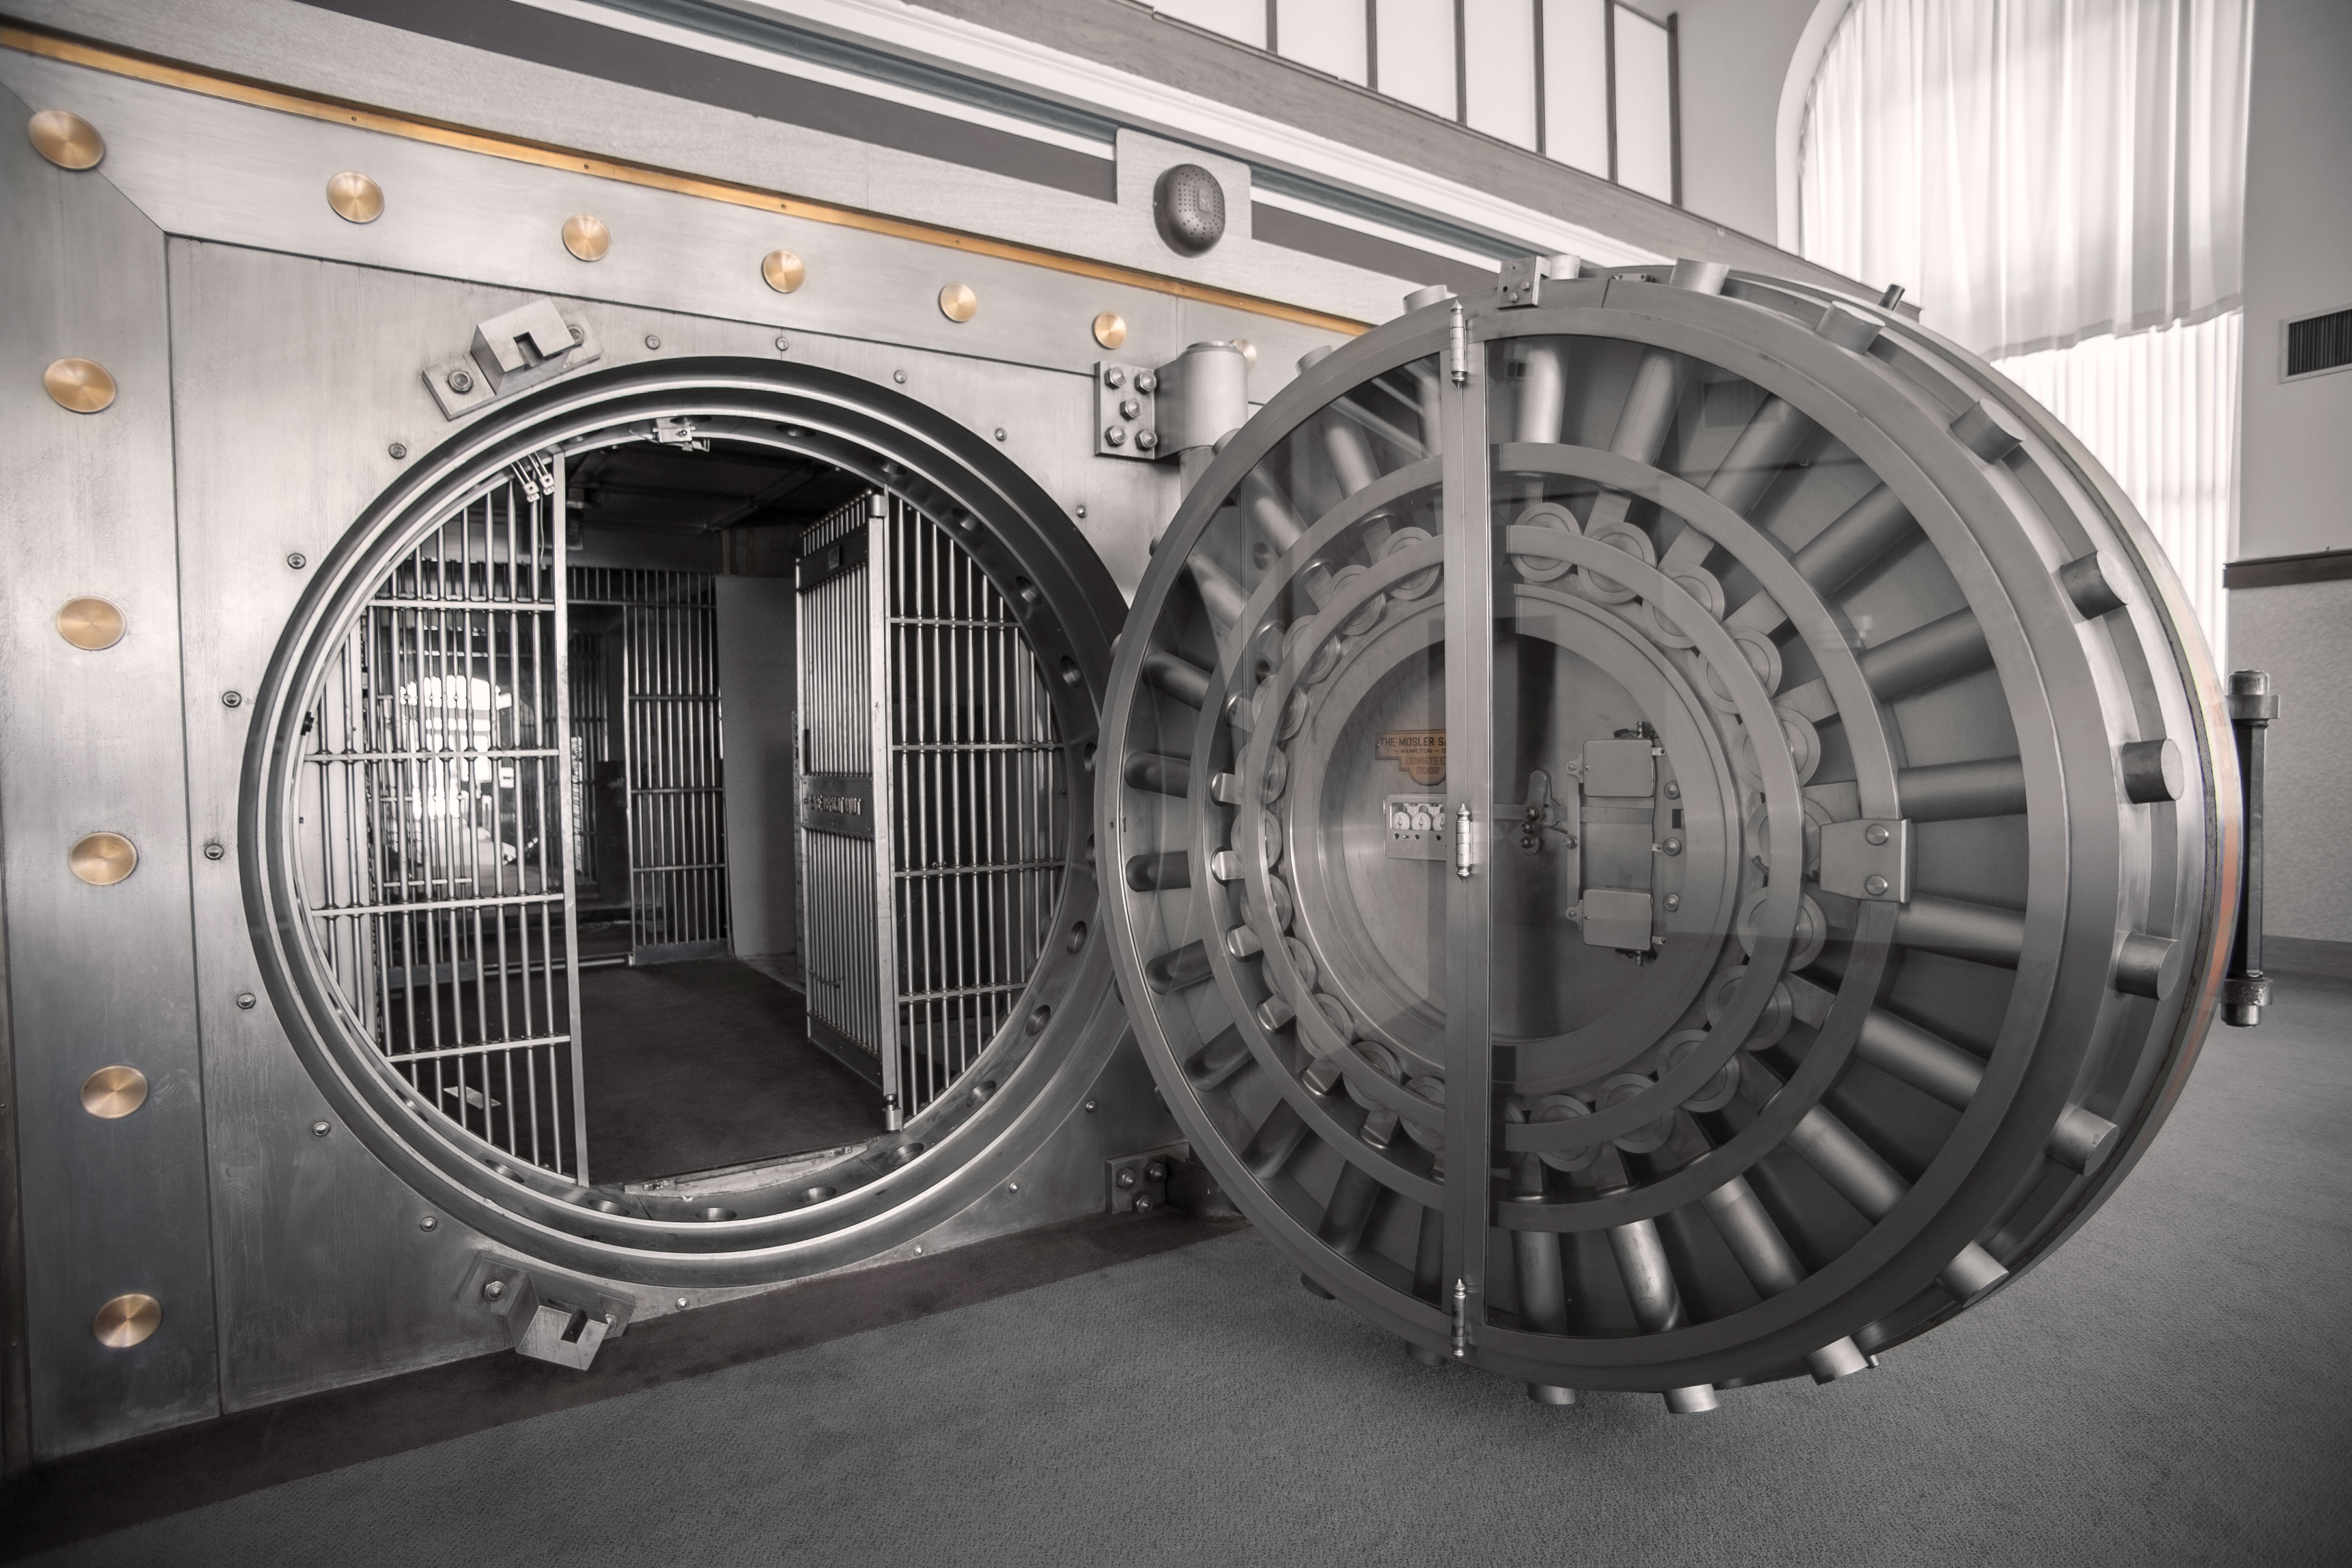 Ball vault ascent. Хранилище the Vault. Дверь банковского хранилища. Банковский сейф. Банковское хранилище с круглой дверь.